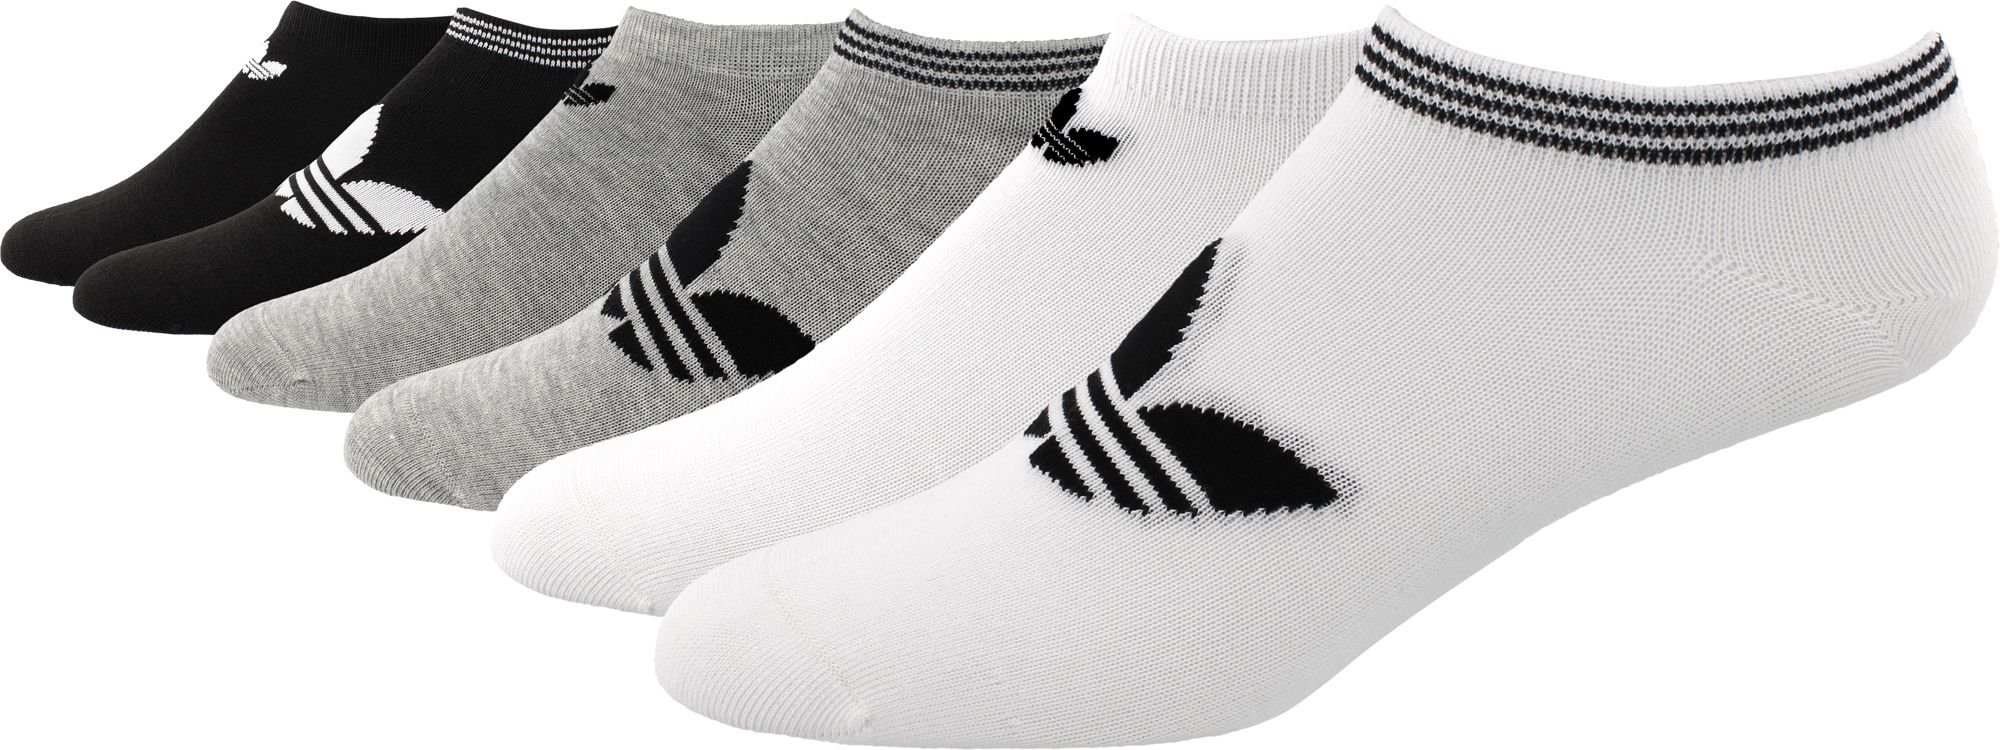 adidas originals sock